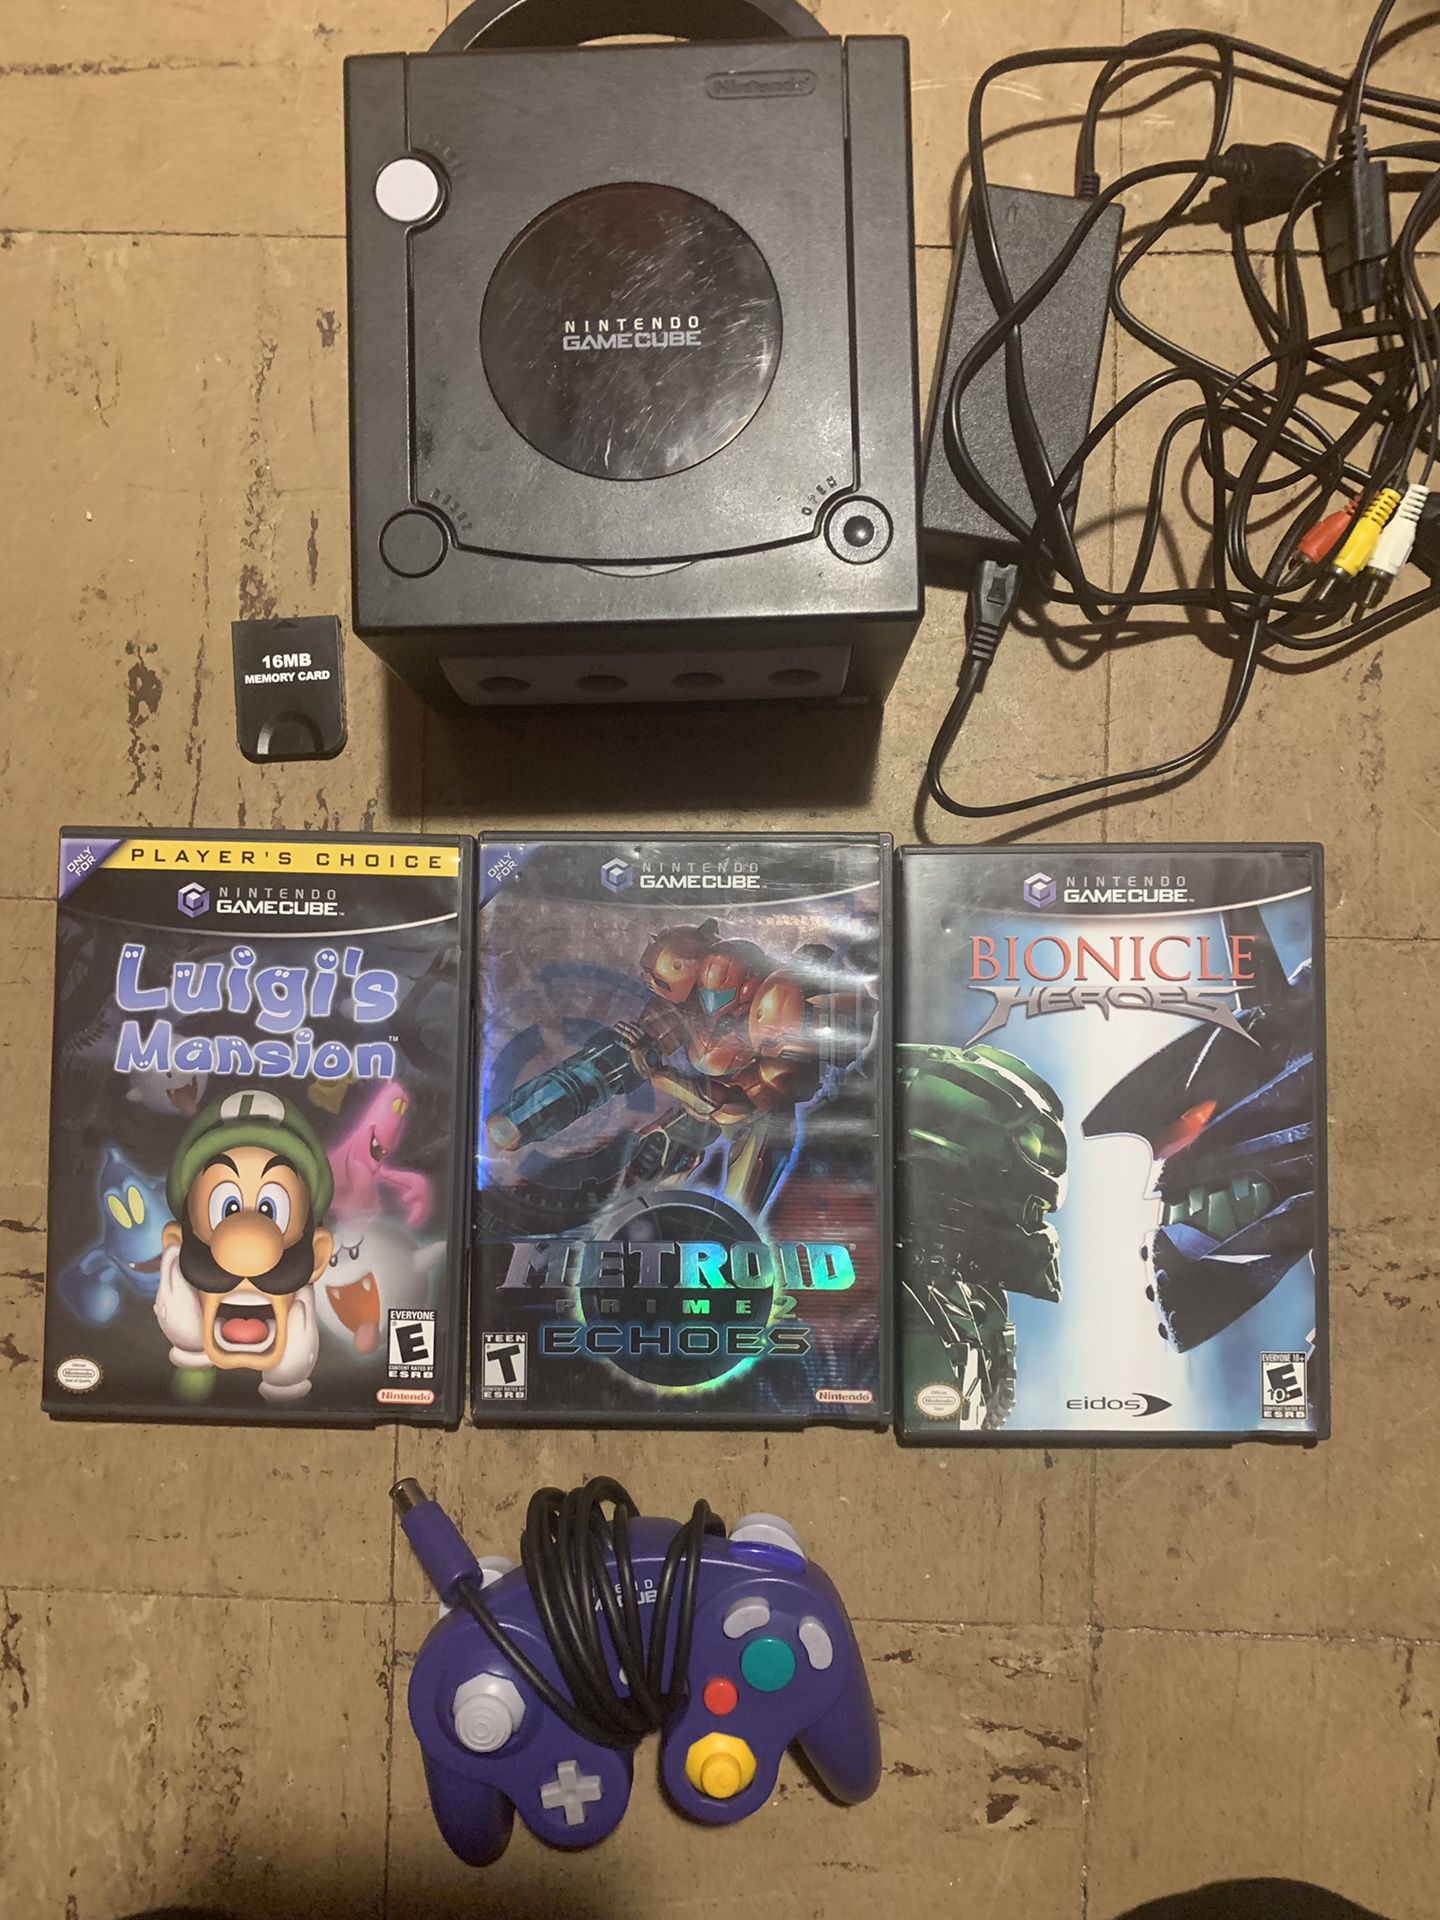 GameCube with original controller, Metroid prime 2 Luigi’s mansion